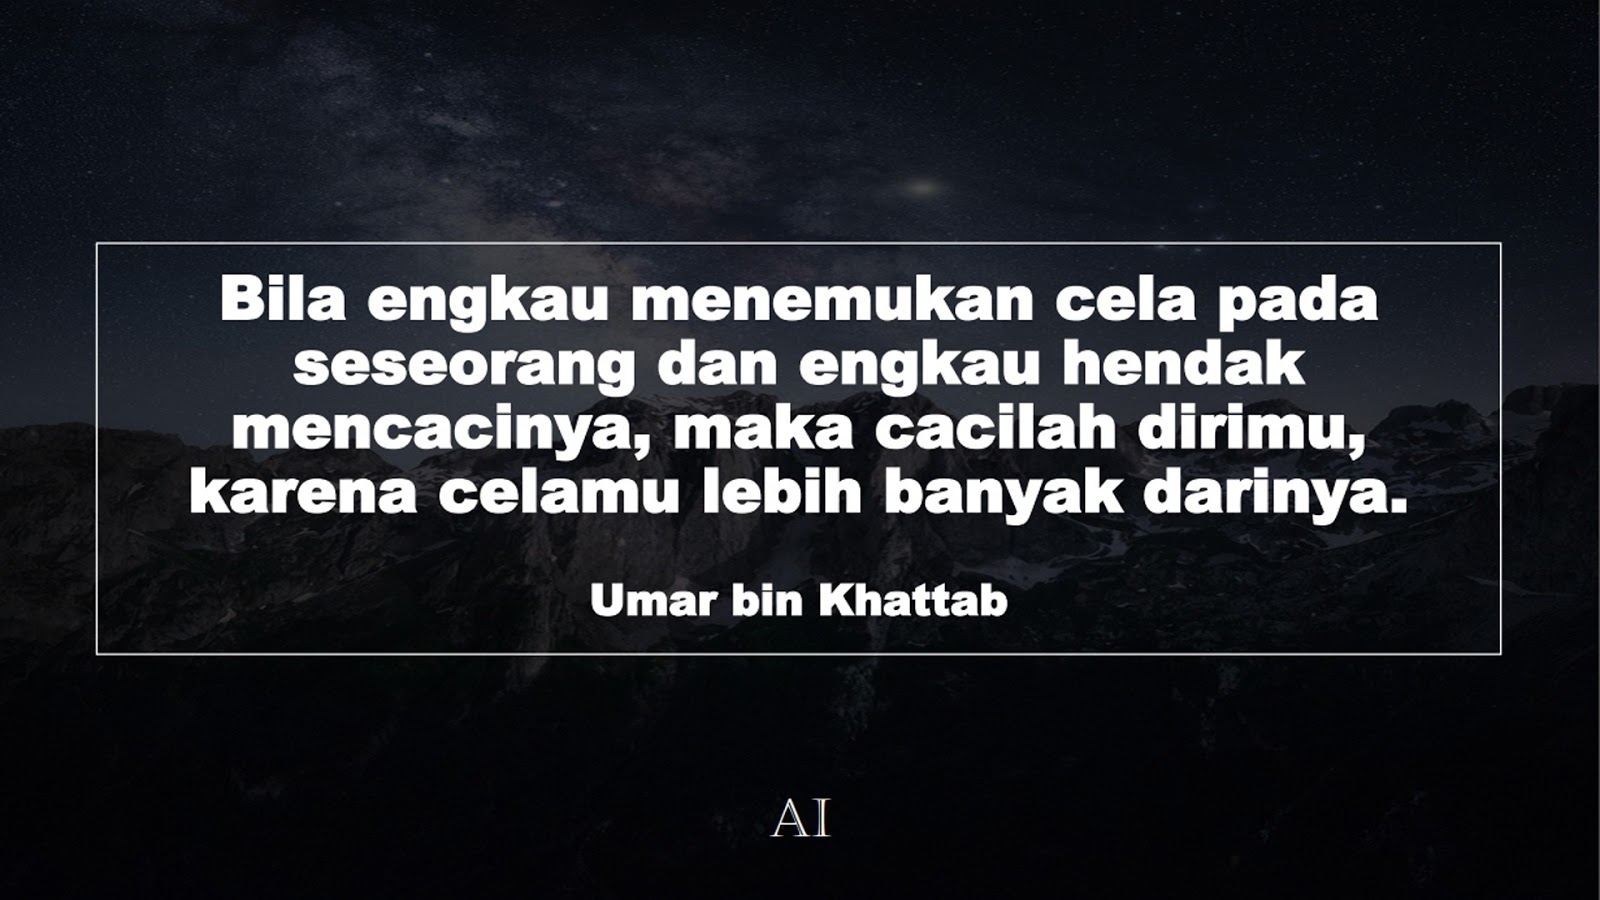 Wallpaper Kata Bijak Umar bin Khattab  (Bila engkau menemukan cela pada seseorang dan engkau hendak mencacinya, maka cacilah dirimu, karena celamu lebih banyak darinya.)